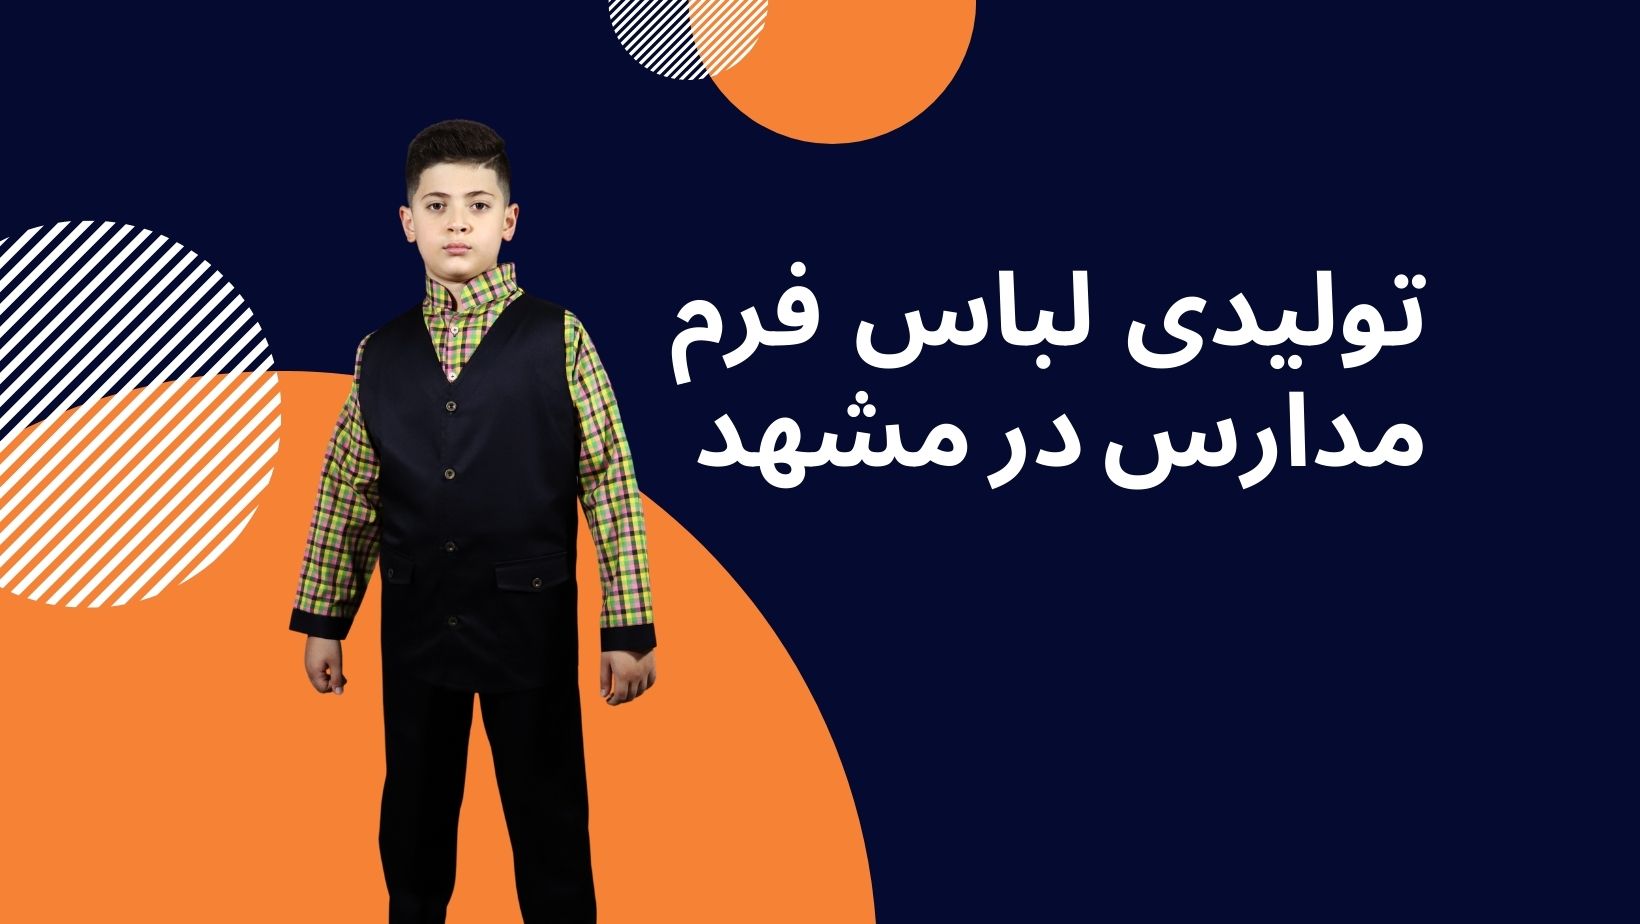 تولیدی لباس فرم مدارس در مشهد